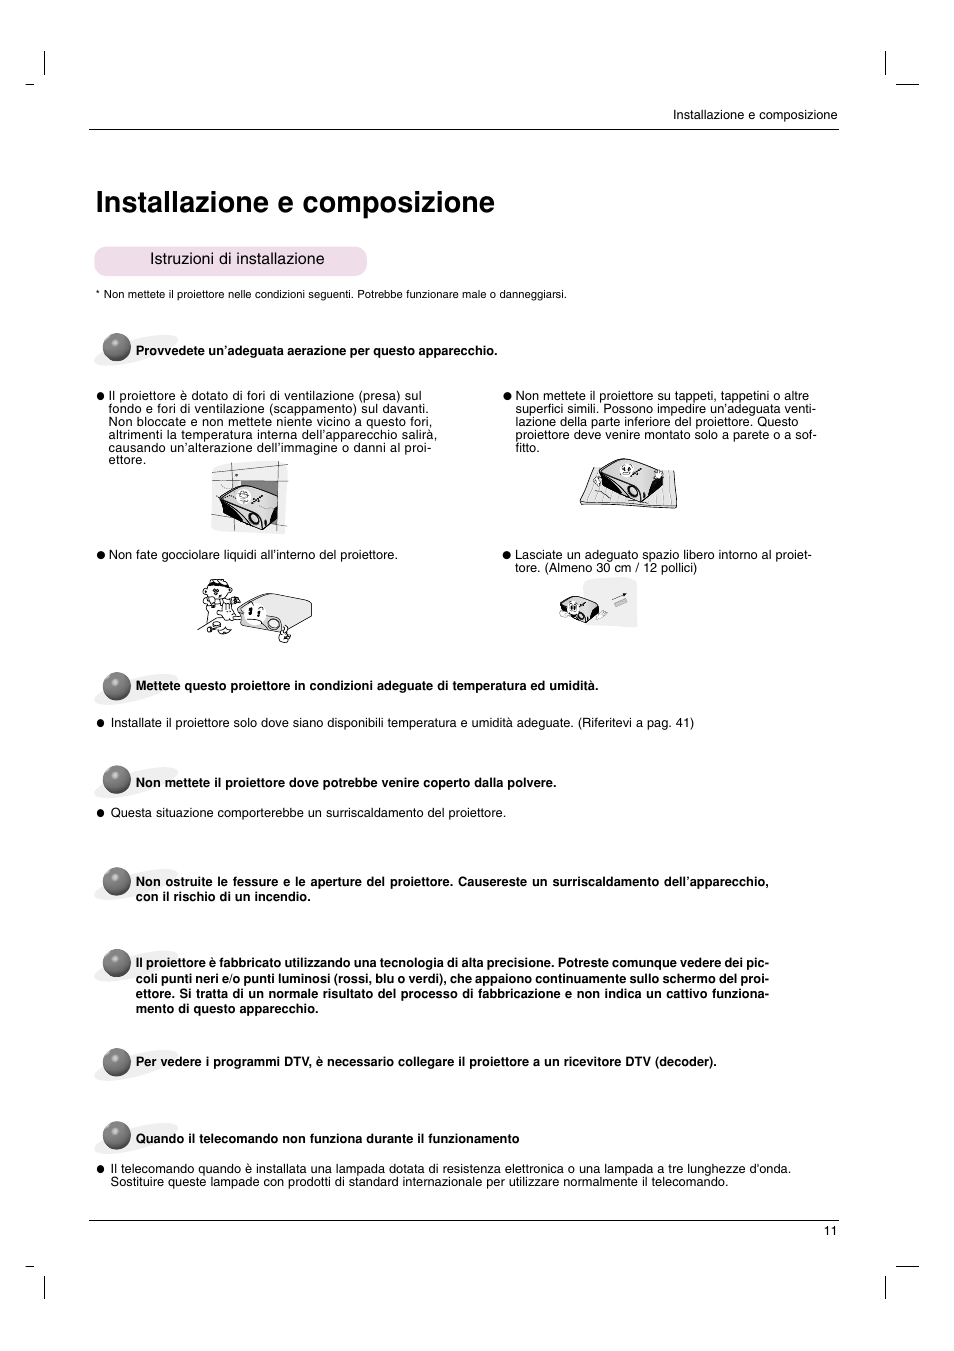 Installazione e composizione, Istruzioni di installazione | LG HS200 Manuale d'uso | Pagina 11 / 42